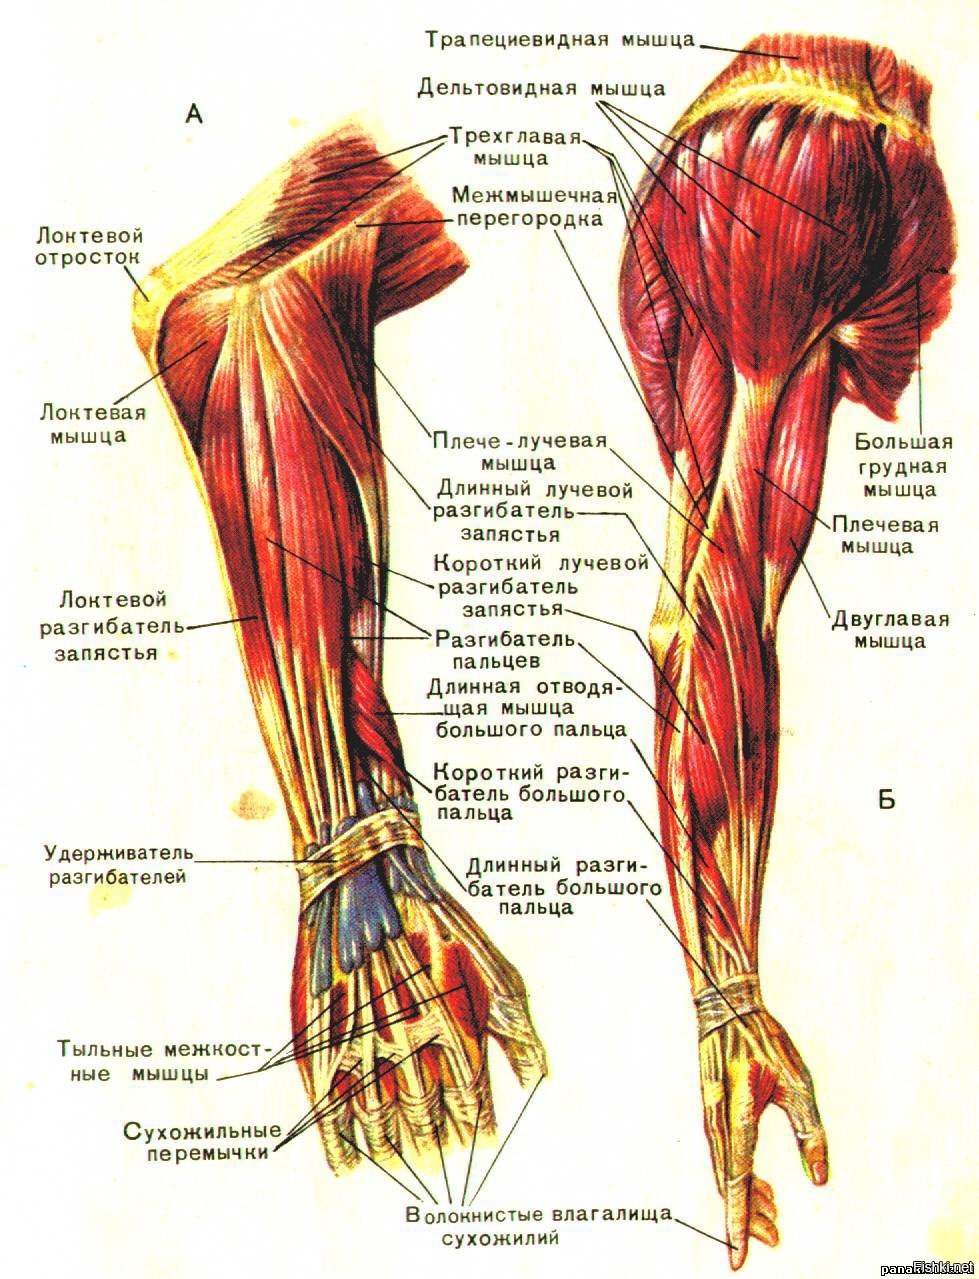 Большие жилы на руках. .Мышцы верхней конечности (плечо и предплечье). Мышцы предплечья разгибатели анатомия. Анатомия руки человека мышцы и связки. Мышцы предплечья атлас.